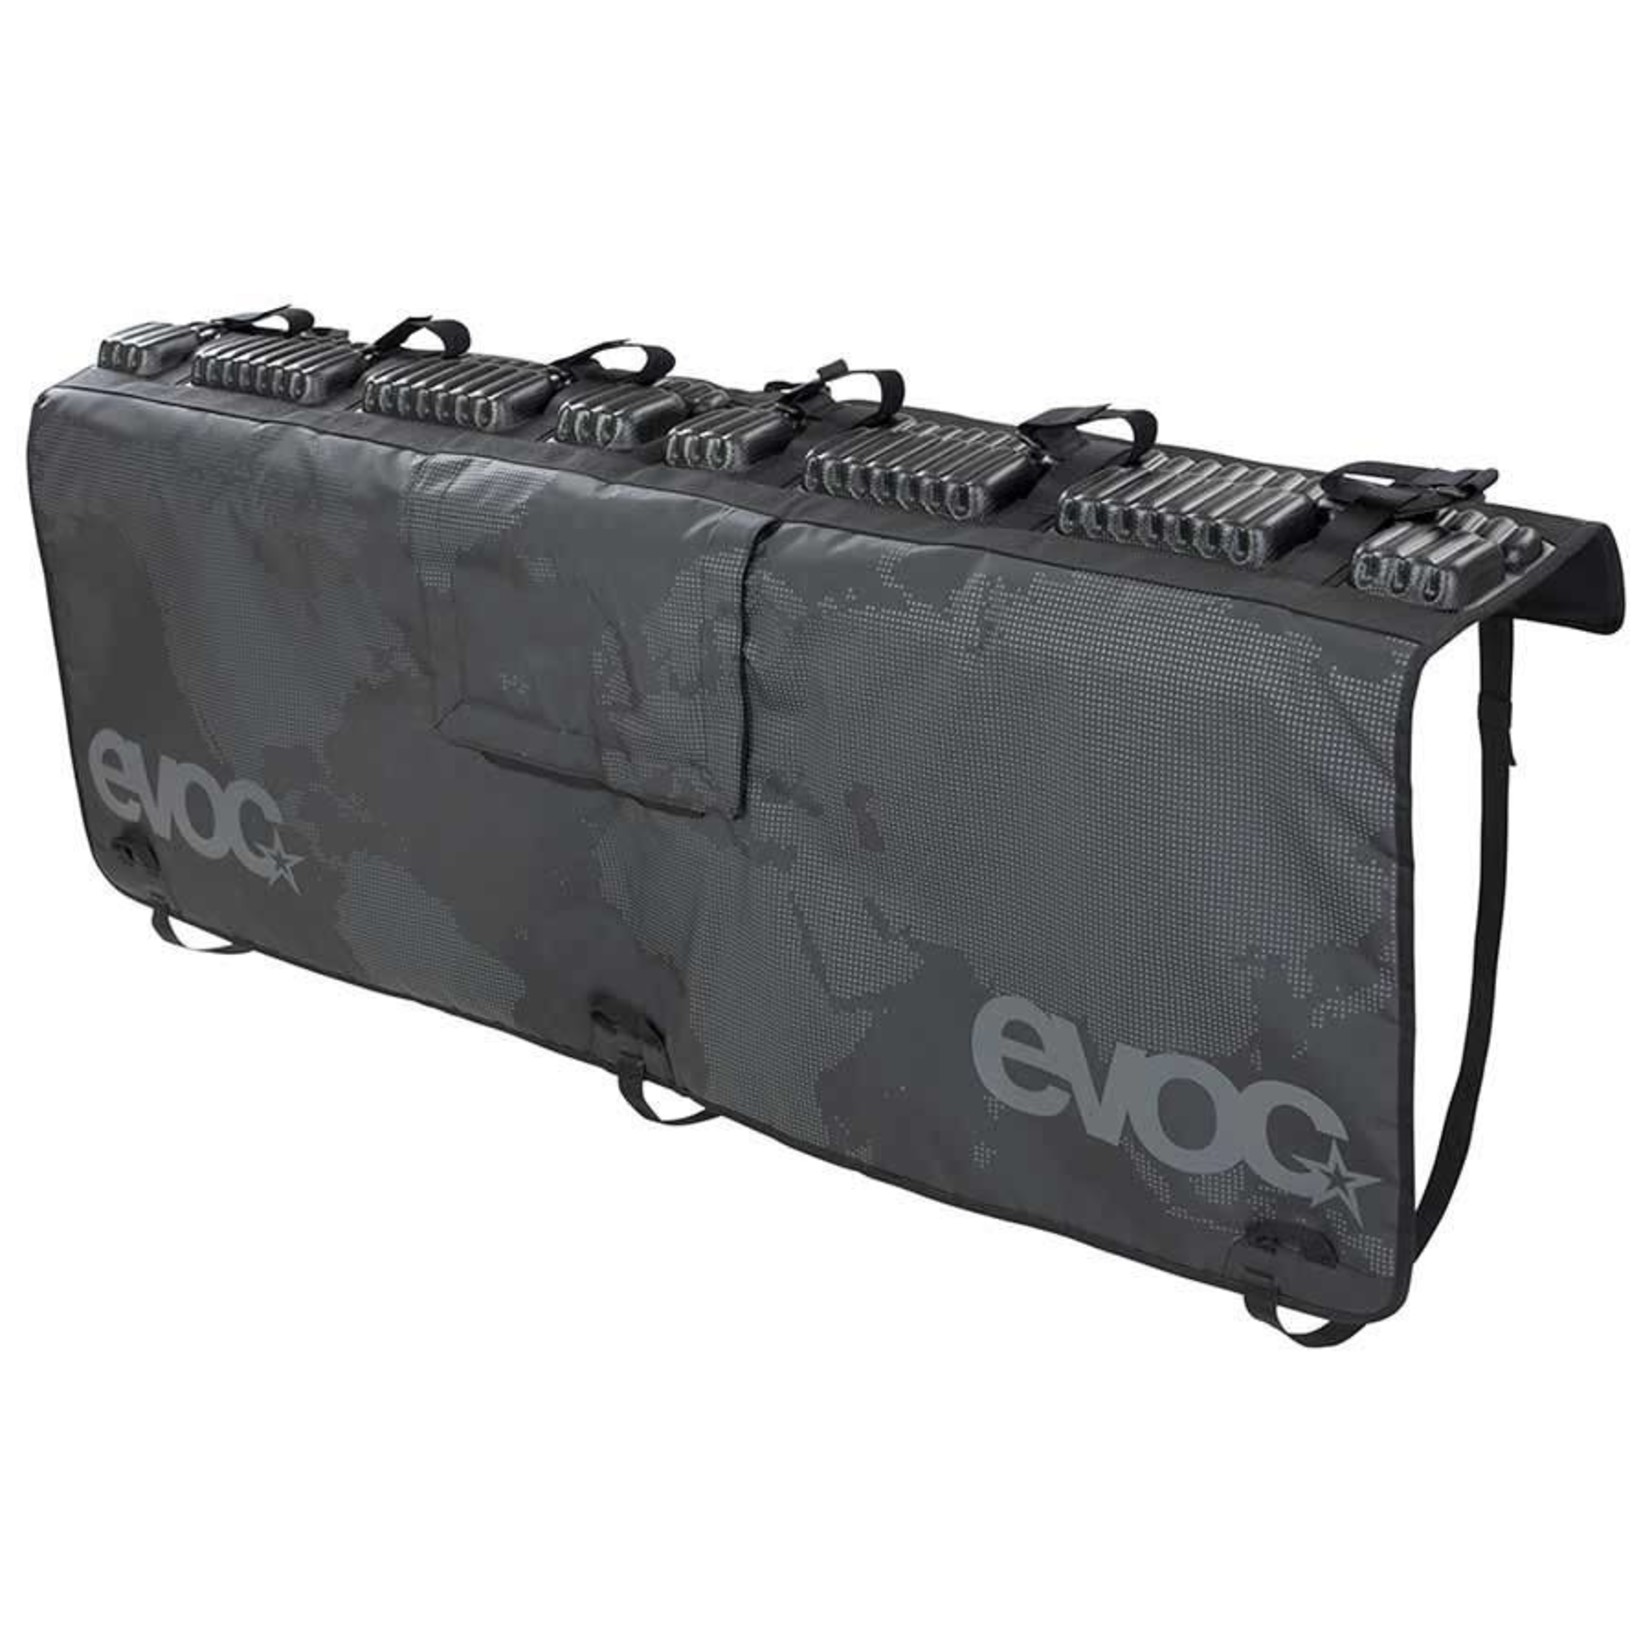 Evoc EVOC, Tailgate Pad, 160cm / 63'' wide, for full-sized trucks, Black